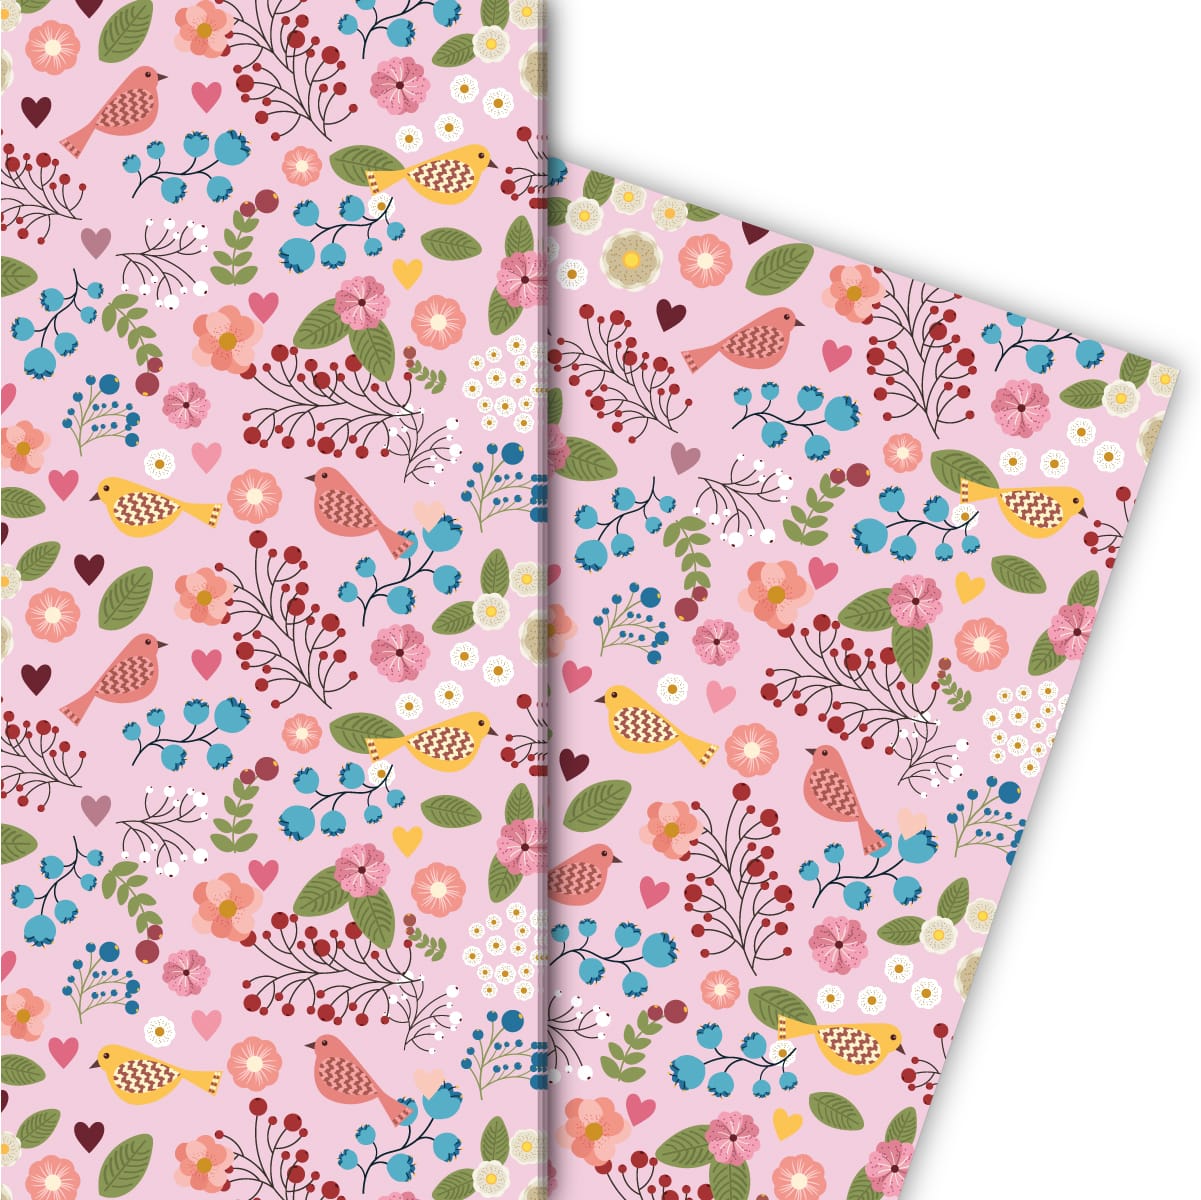 Kartenkaufrausch: Leichtes Geschenkpapier mit Vögelchen aus unserer florale Papeterie in rosa